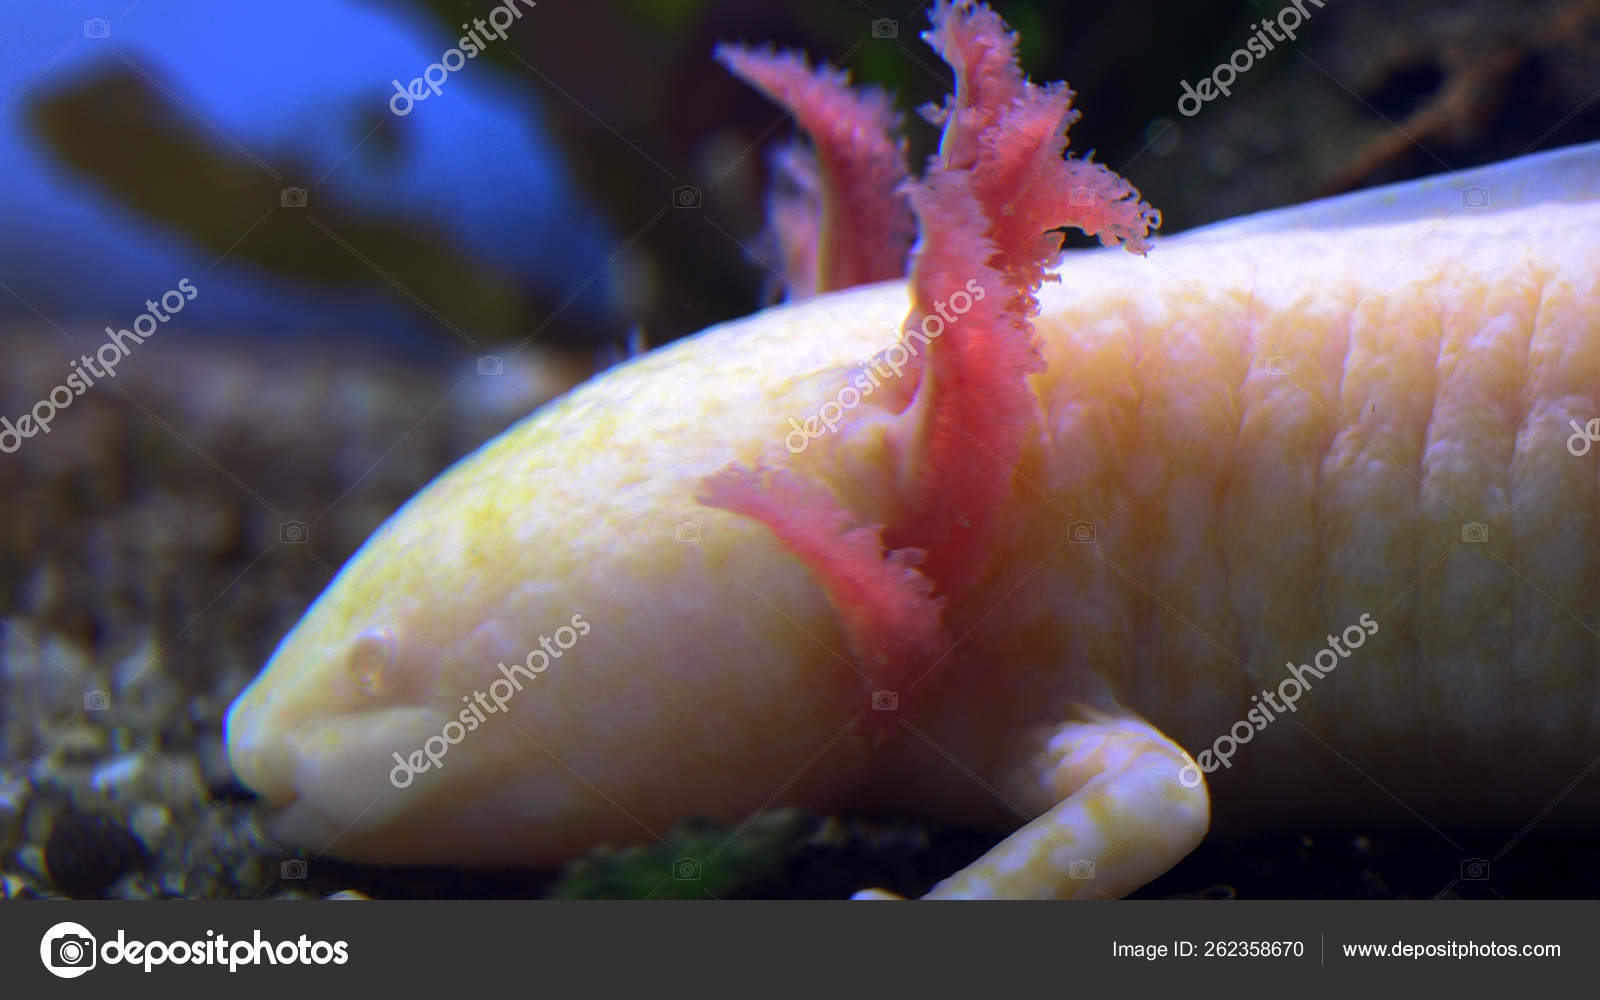 Captive White Baby Axolotl Mexican Walking Fish Mexican Salamander Stock Photo By C Botec